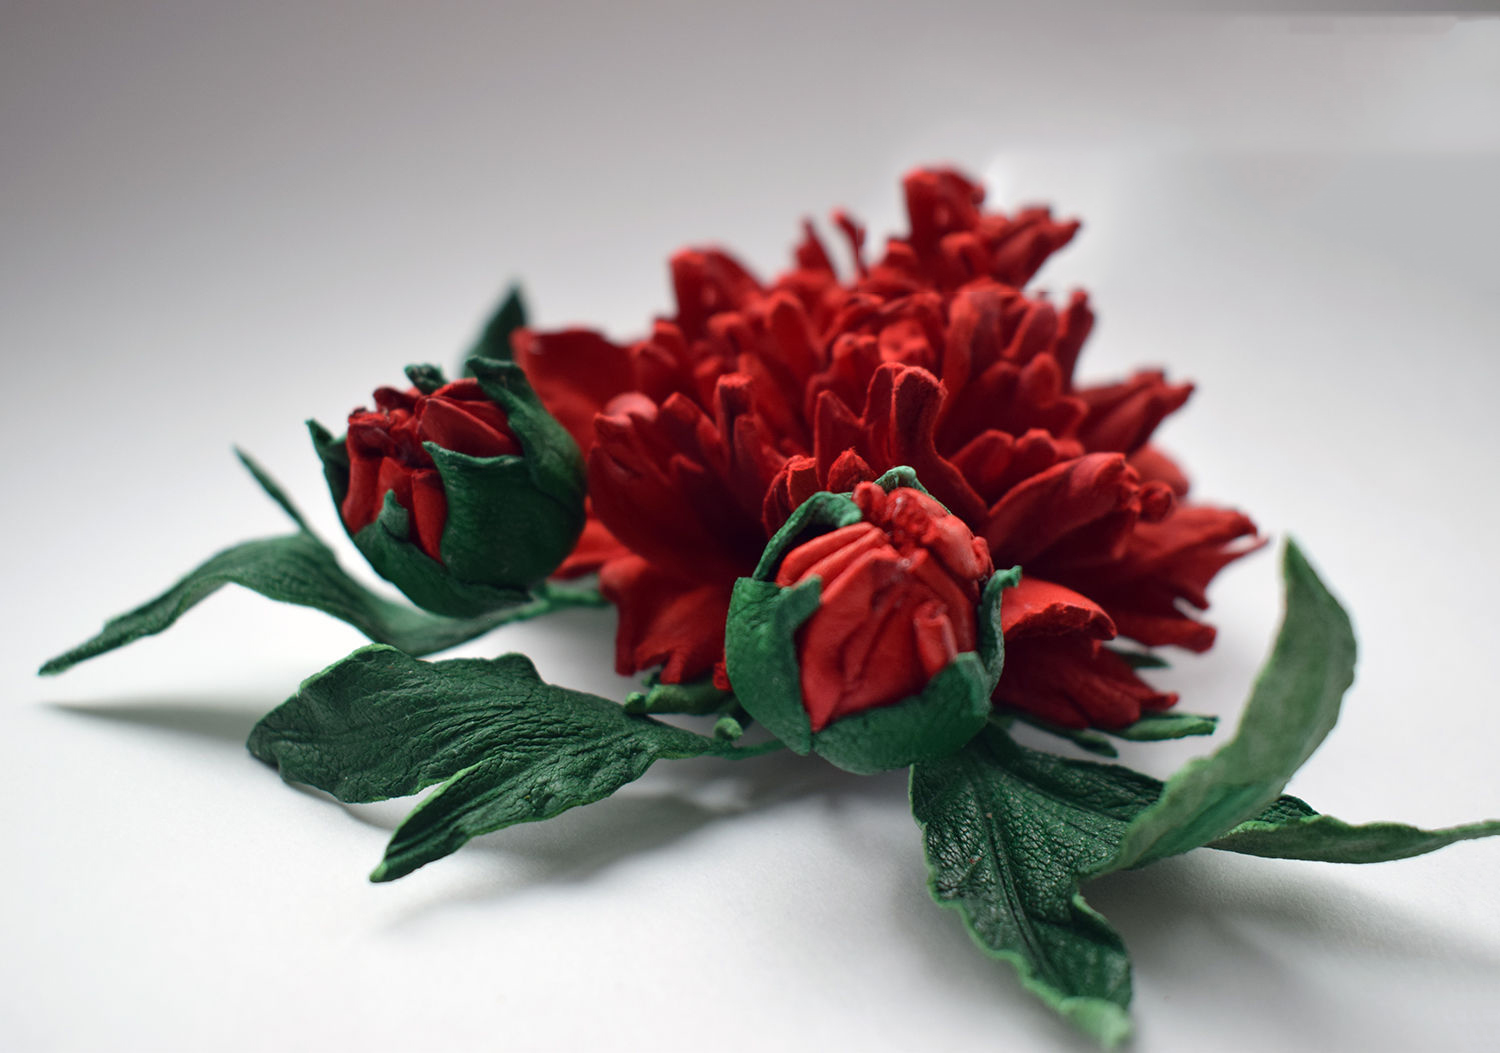 Tuyển tập hình ảnh hoa mẫu đơn đỏ đẹp nhất mời bạn chiêm ngưỡng - [Kích thước hình ảnh: 1500x1053 px]